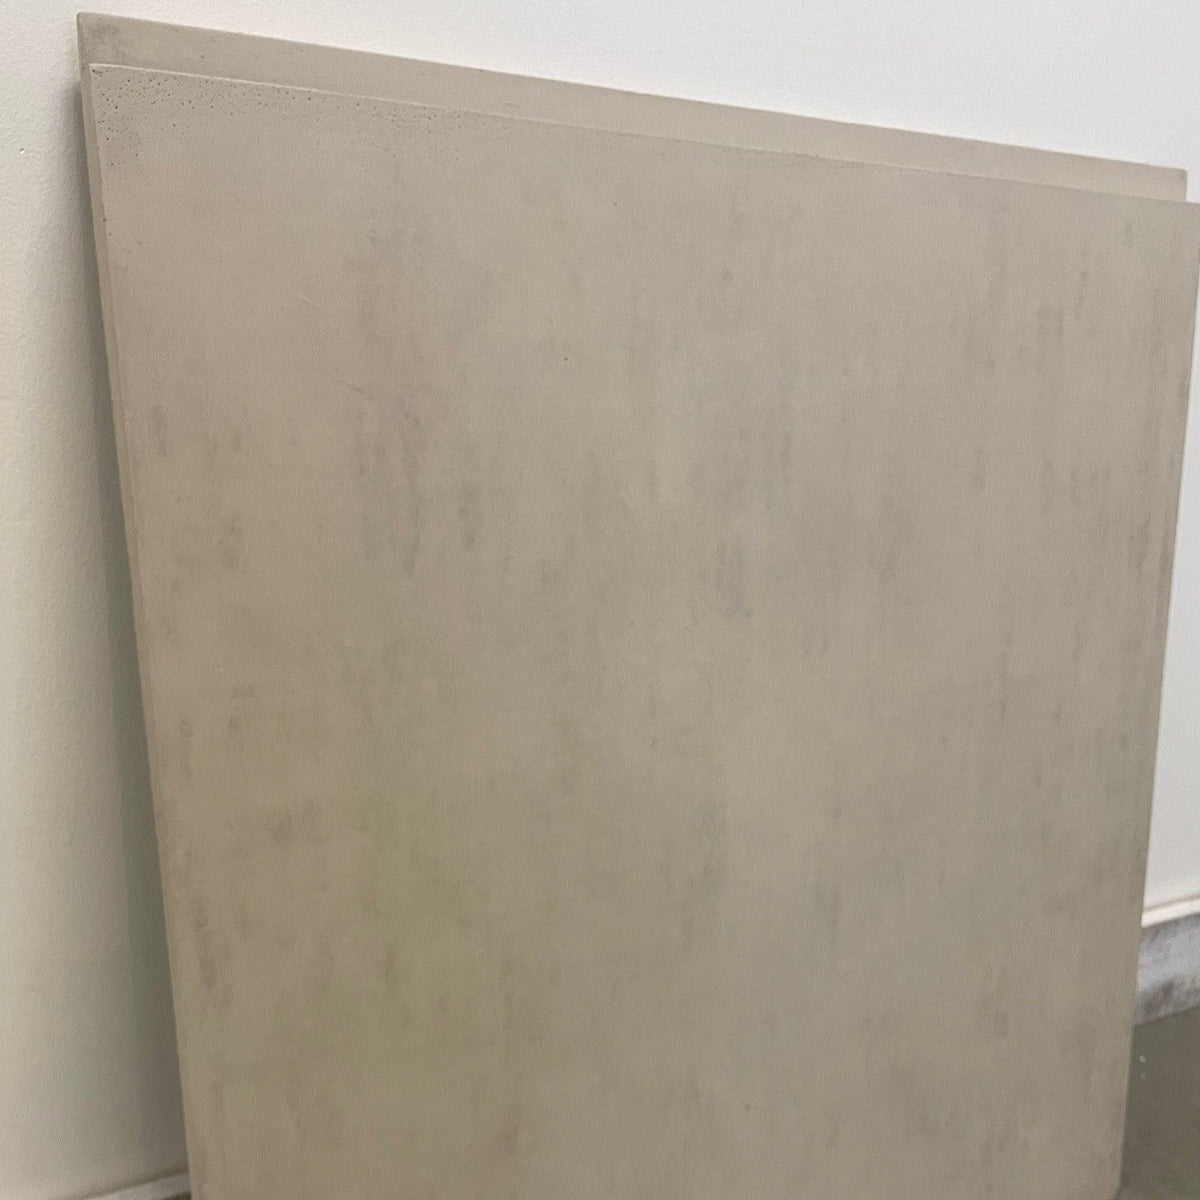 UrbanConcrete 22.5x23.5x1 Faux Concrete Panel - Washed Grey Smooth - Final Sale